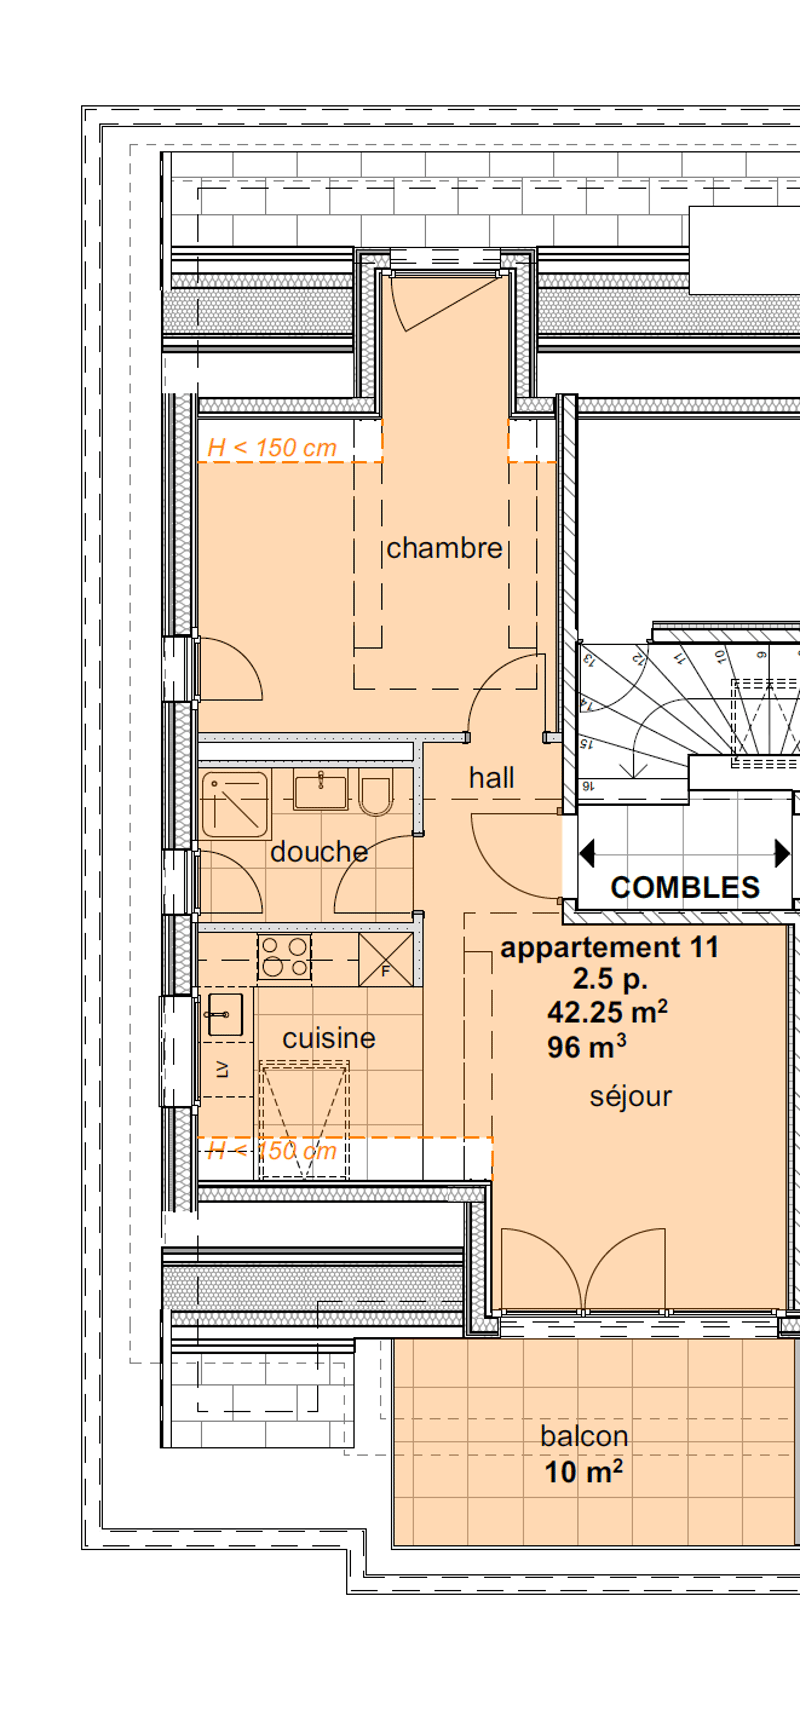 Appartements neufs de 3.5 pièces aux combles (3ème étage) - (nord) (2)